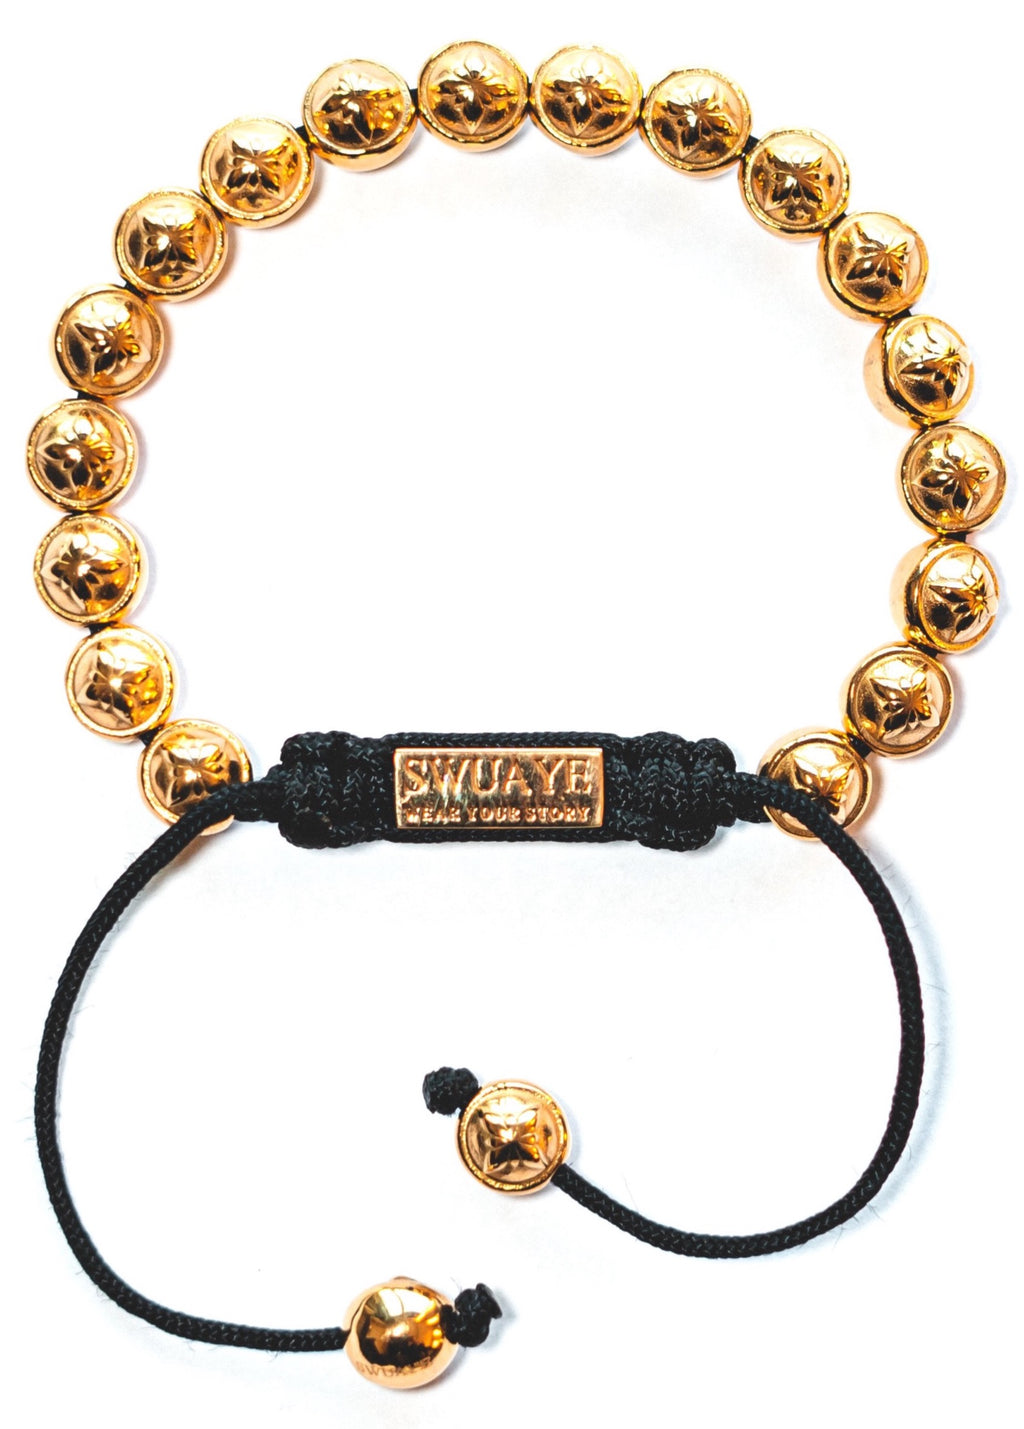 Full 18K Gold Plated Swuaye Logo Bracelet